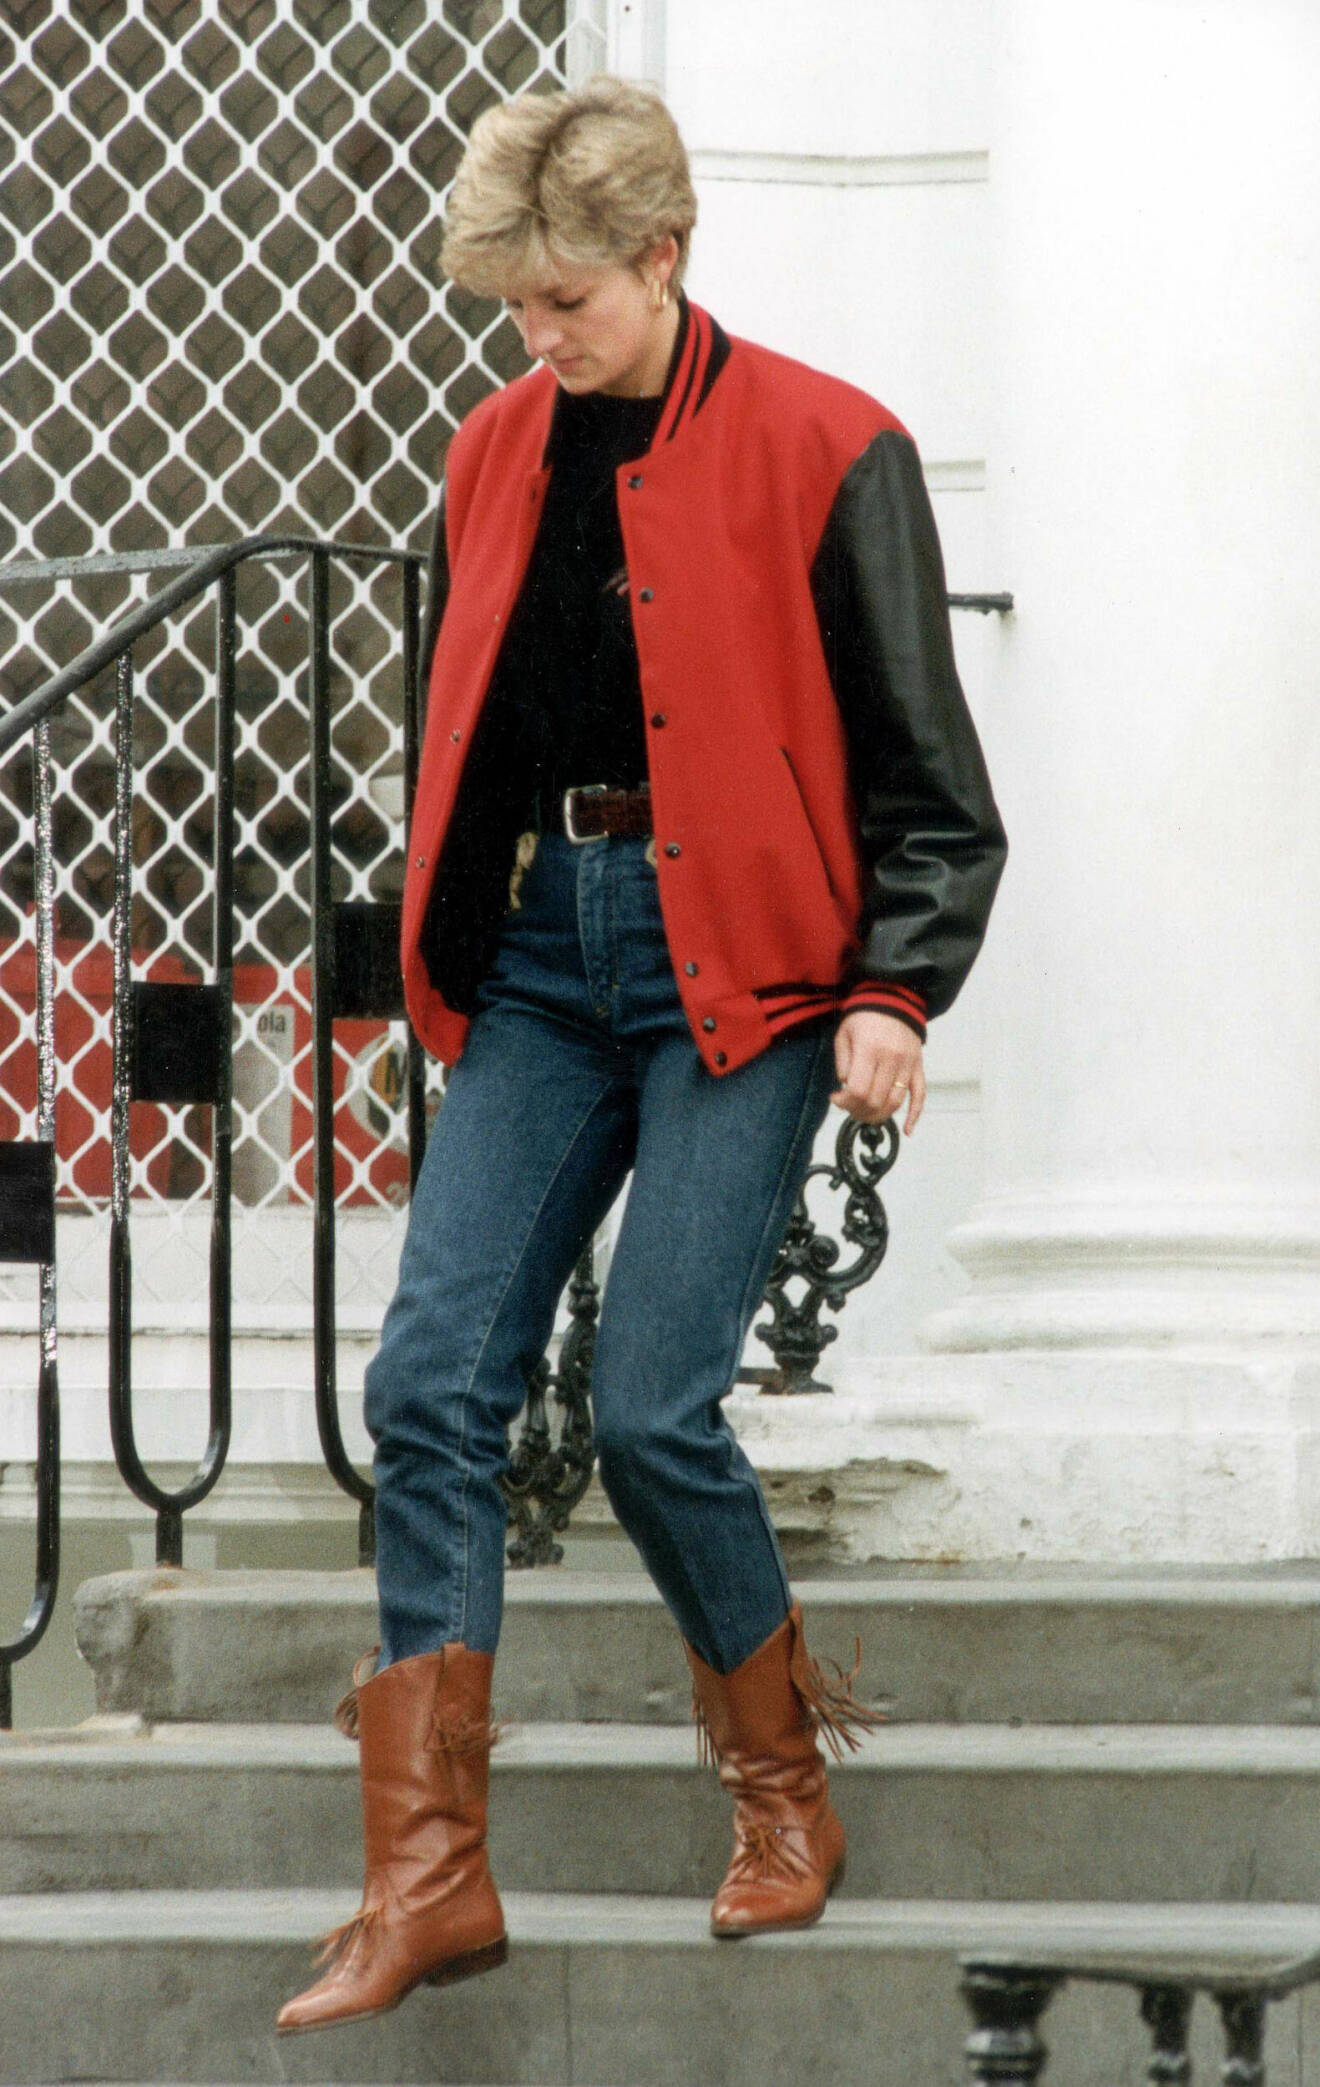 Diana 1992 efter att ha lämnat prins Harry vid skolan. Klädd i röd bomberjacka, jeans och bruna stövlar.